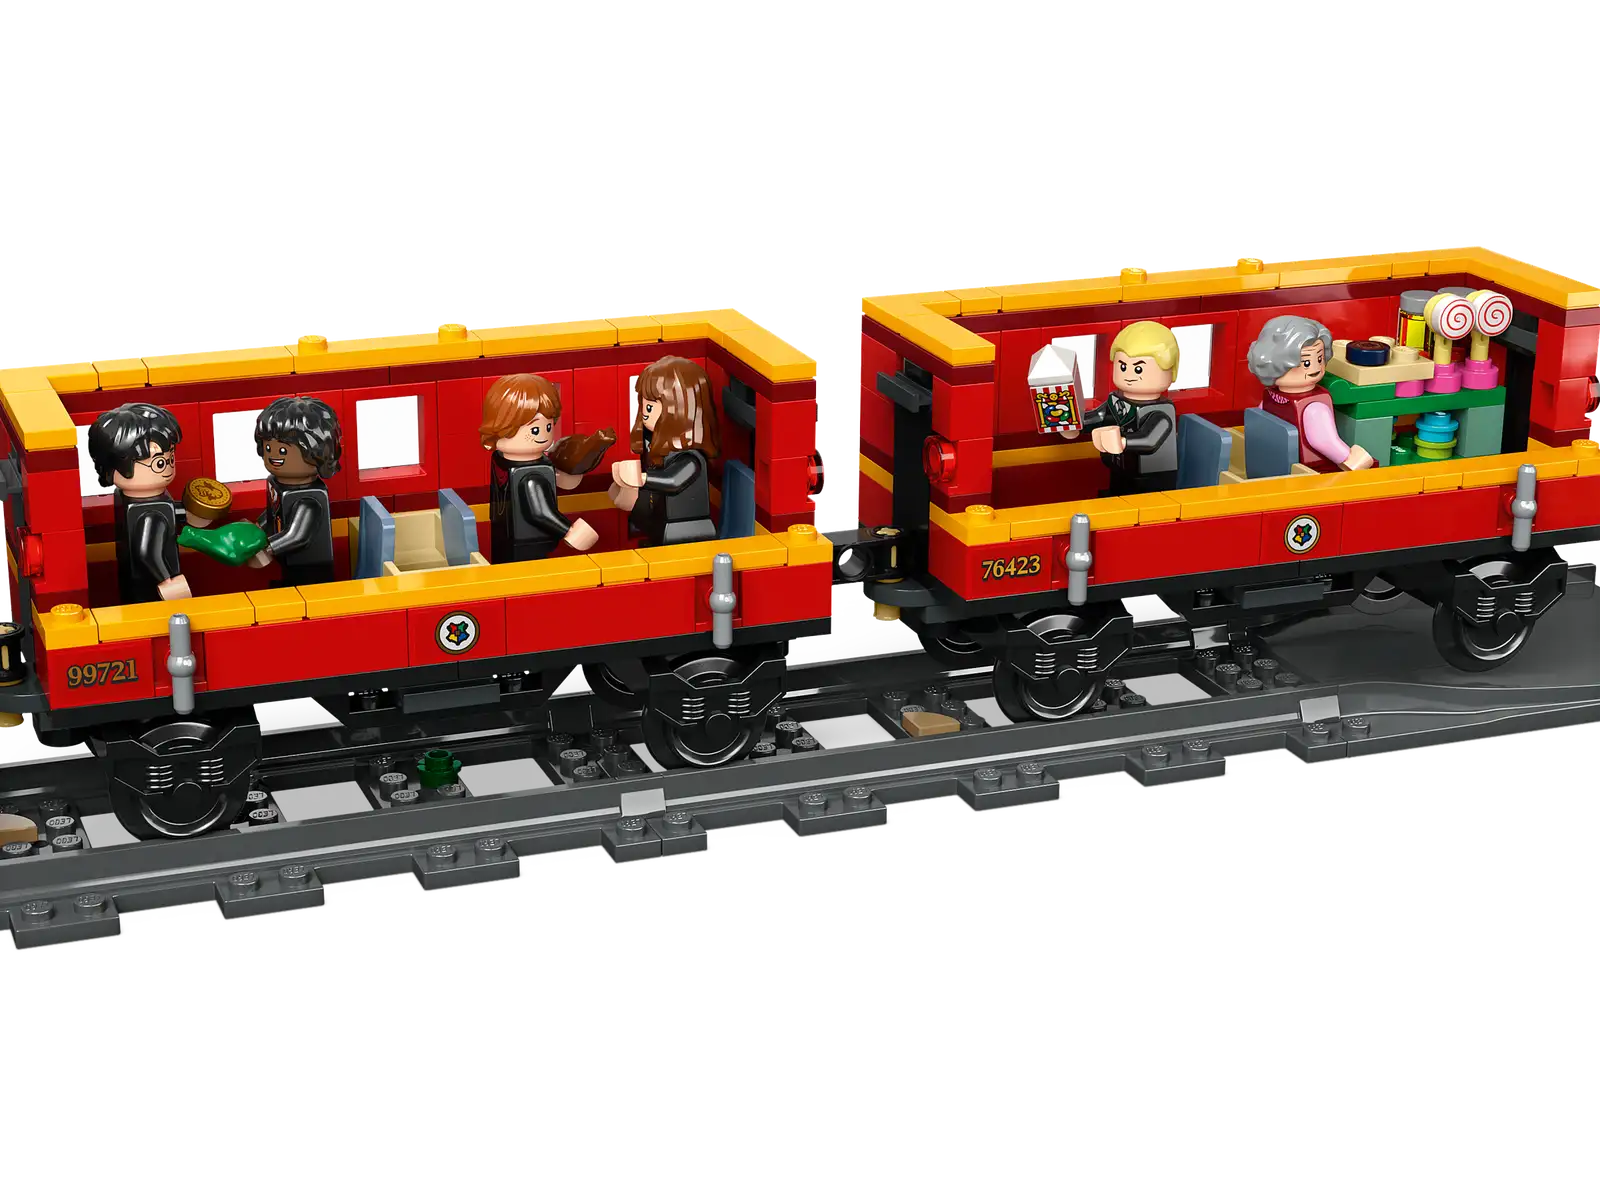 Classificação de todos os LEGO Harry Potter Hogwarts Express modelo